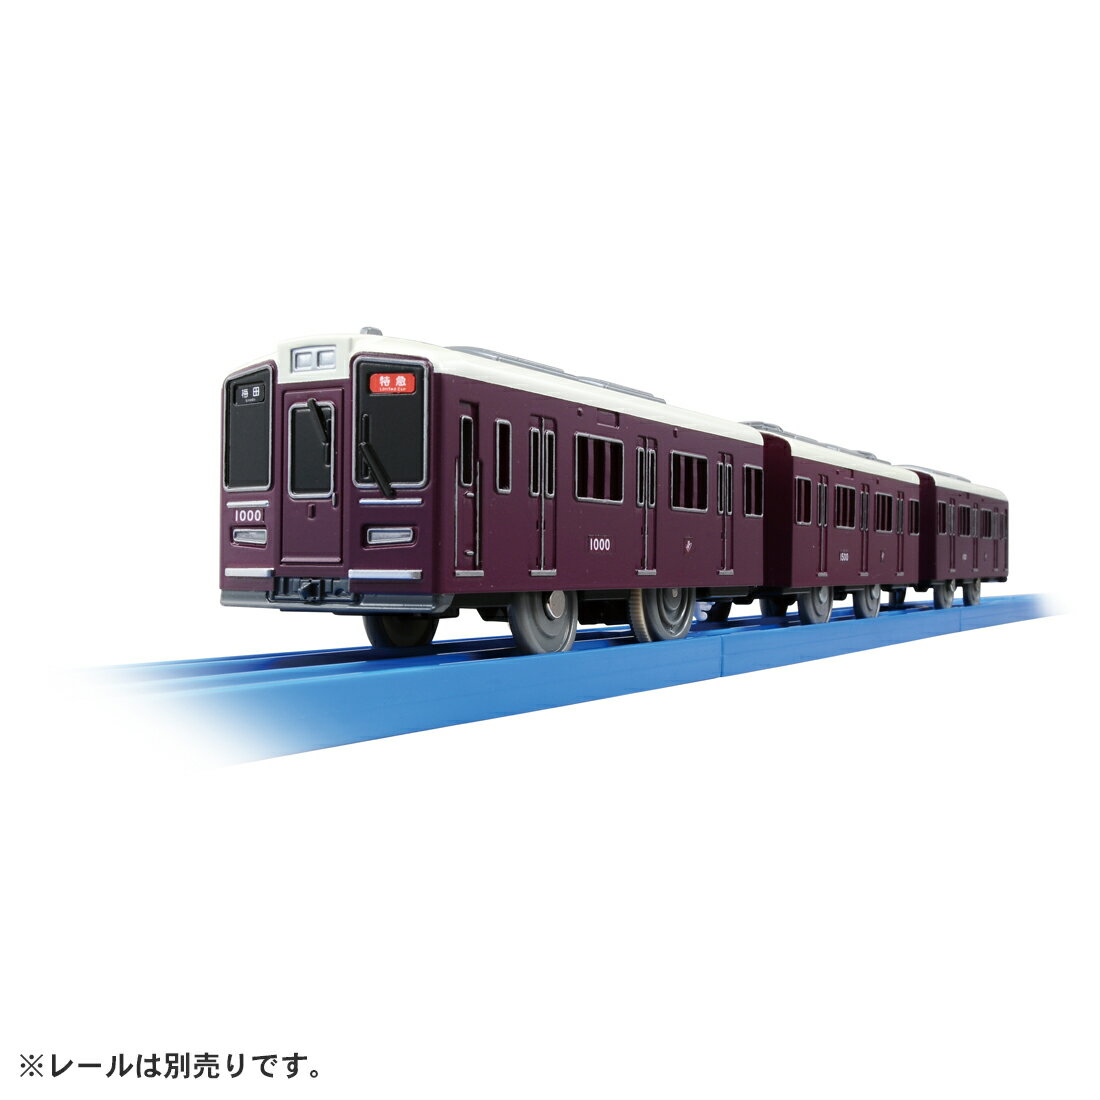 プラレール タカラトミー プラレール S-47 阪急電鉄1000系